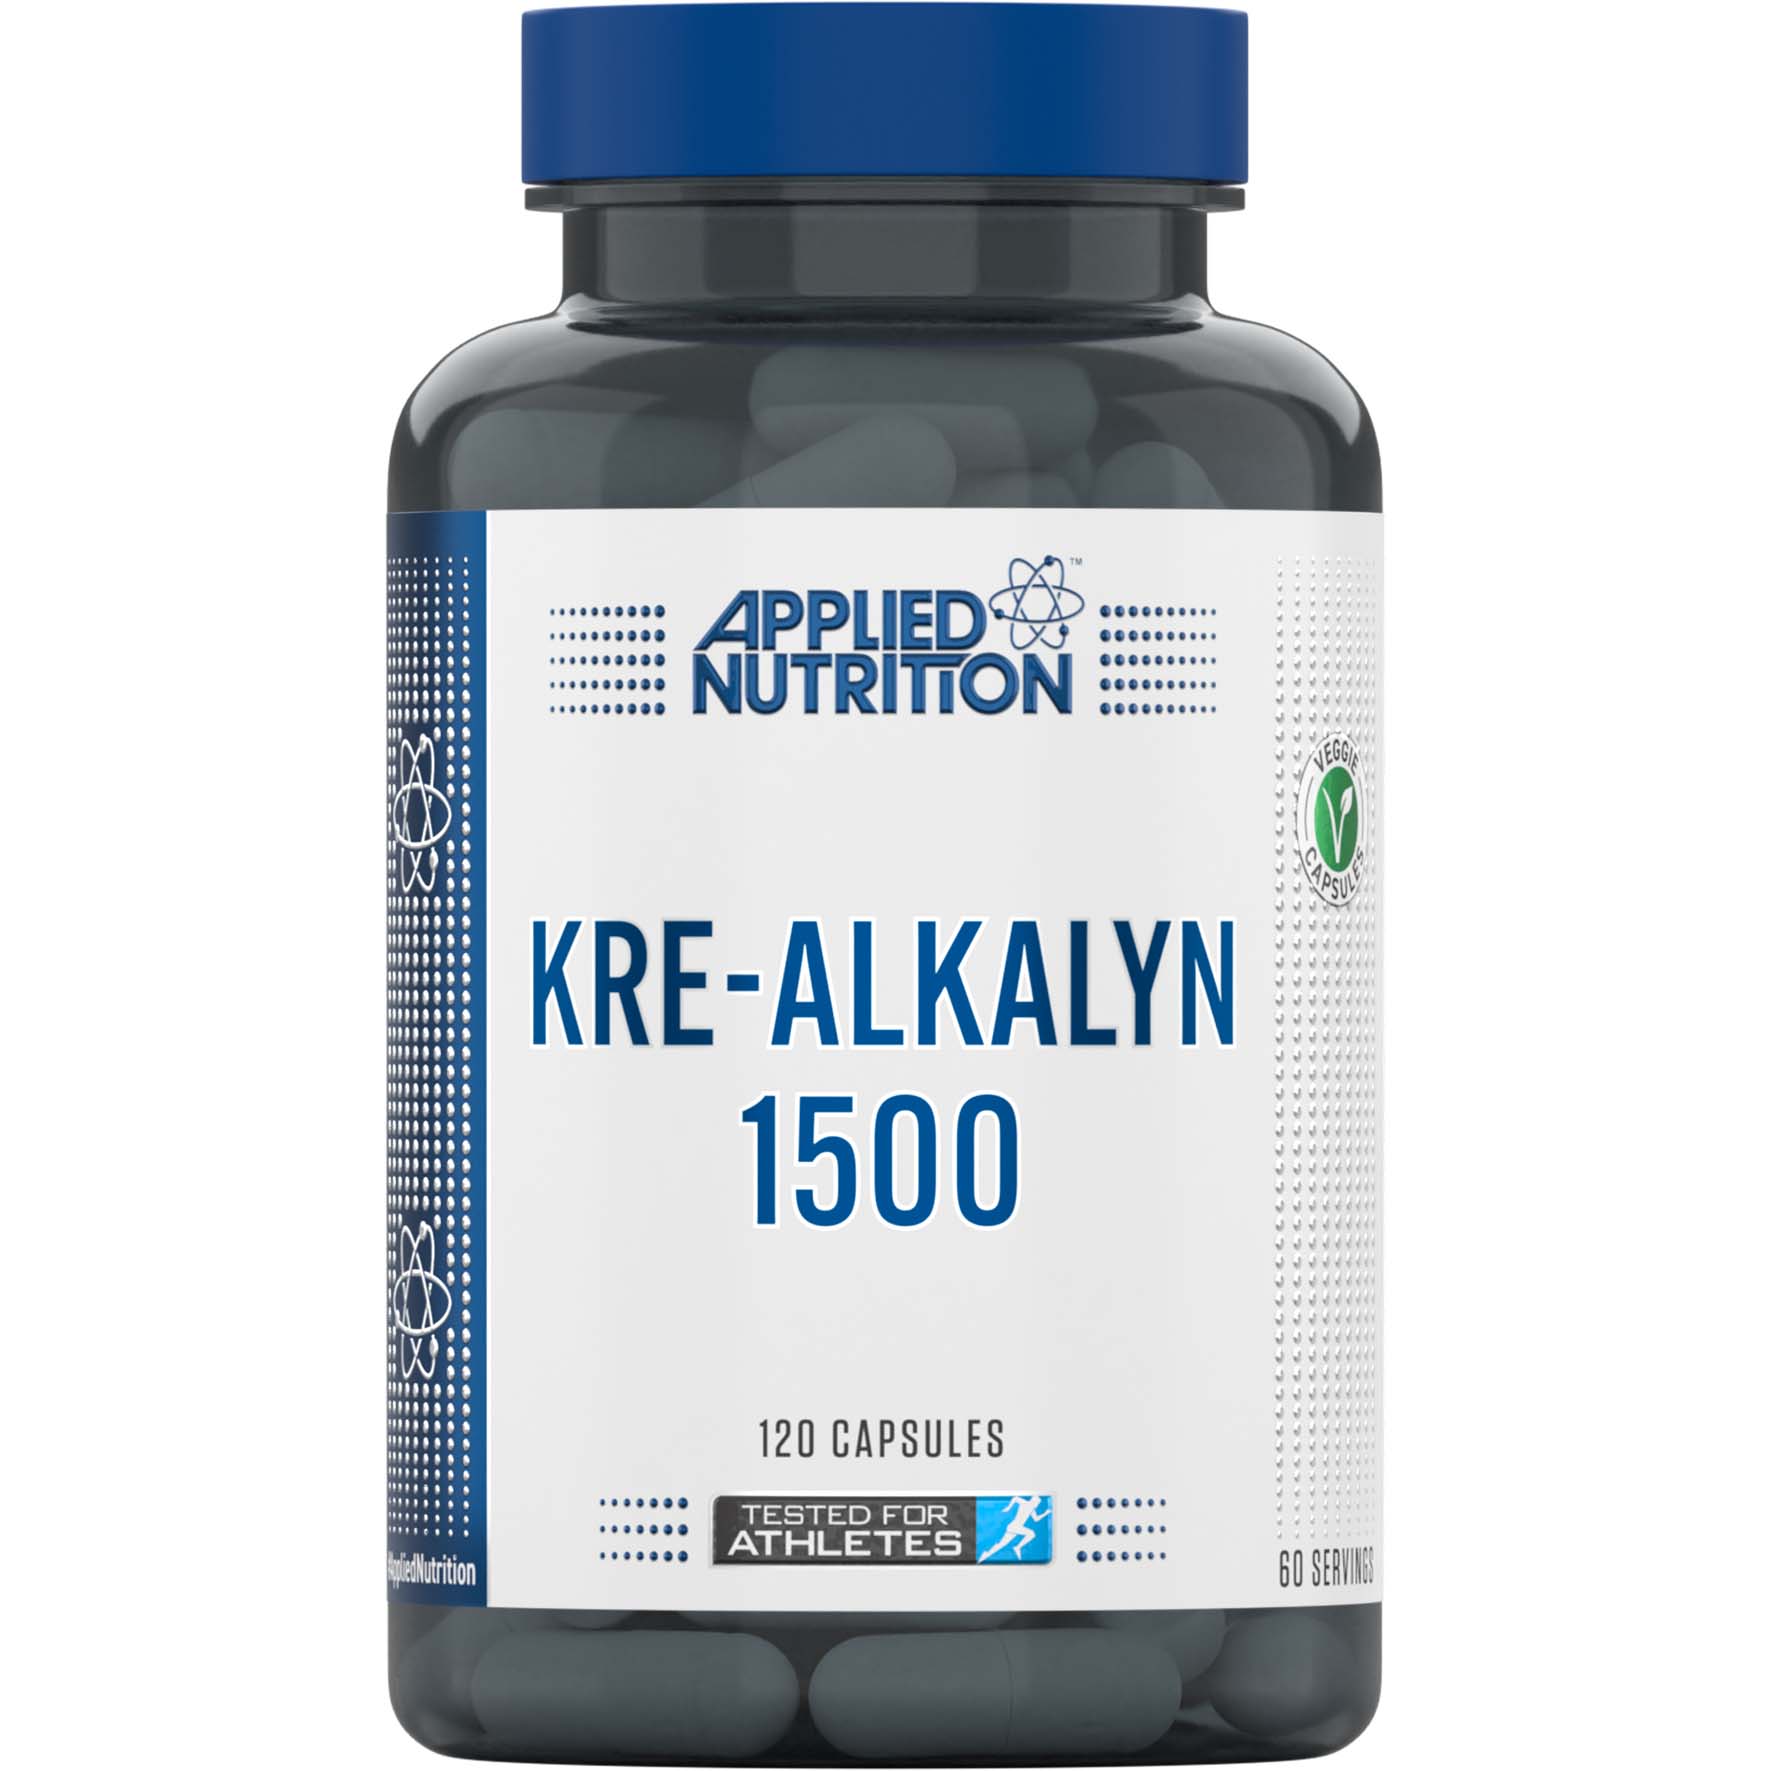 Applied Nutrition Kre Alkalyn, 120 Capsules